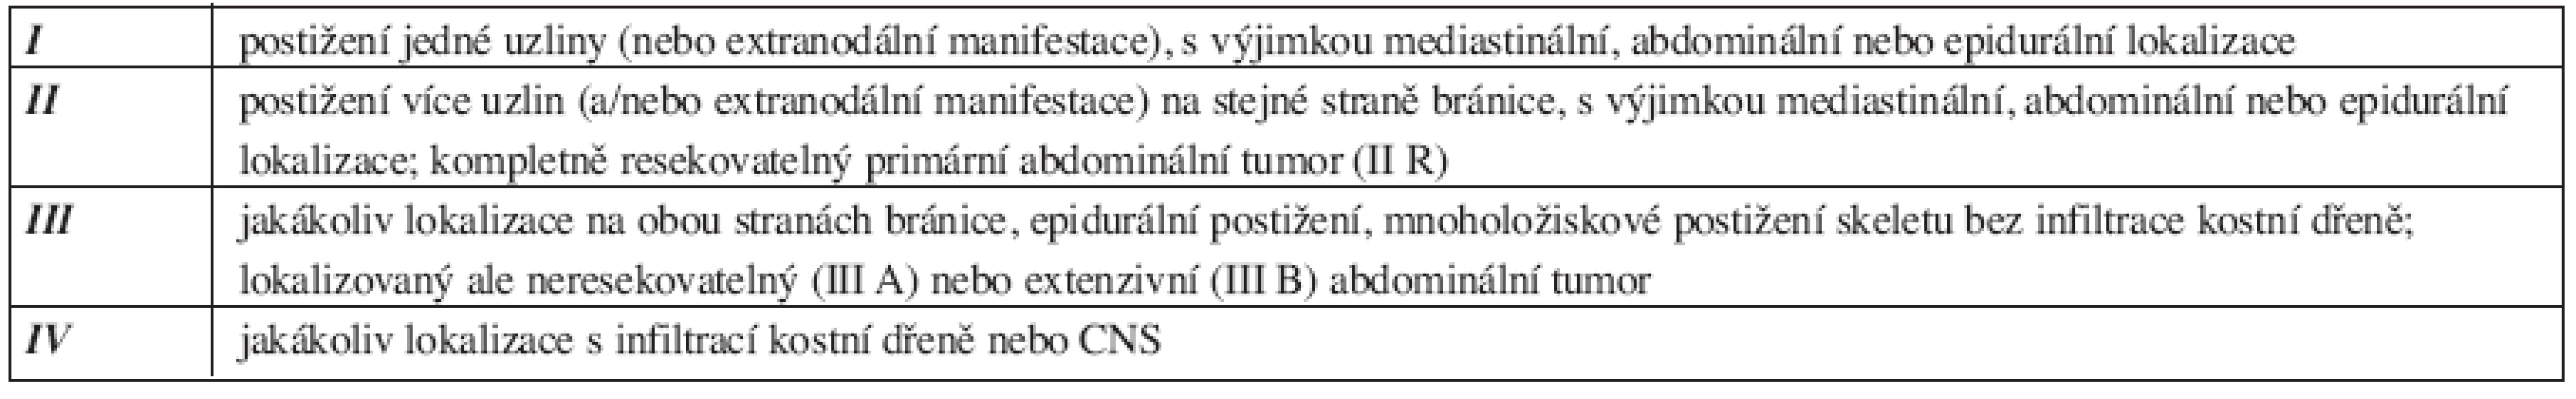 Klasifikace maligních lymfomů dle Sharon B. Murphyové (1980) (20).